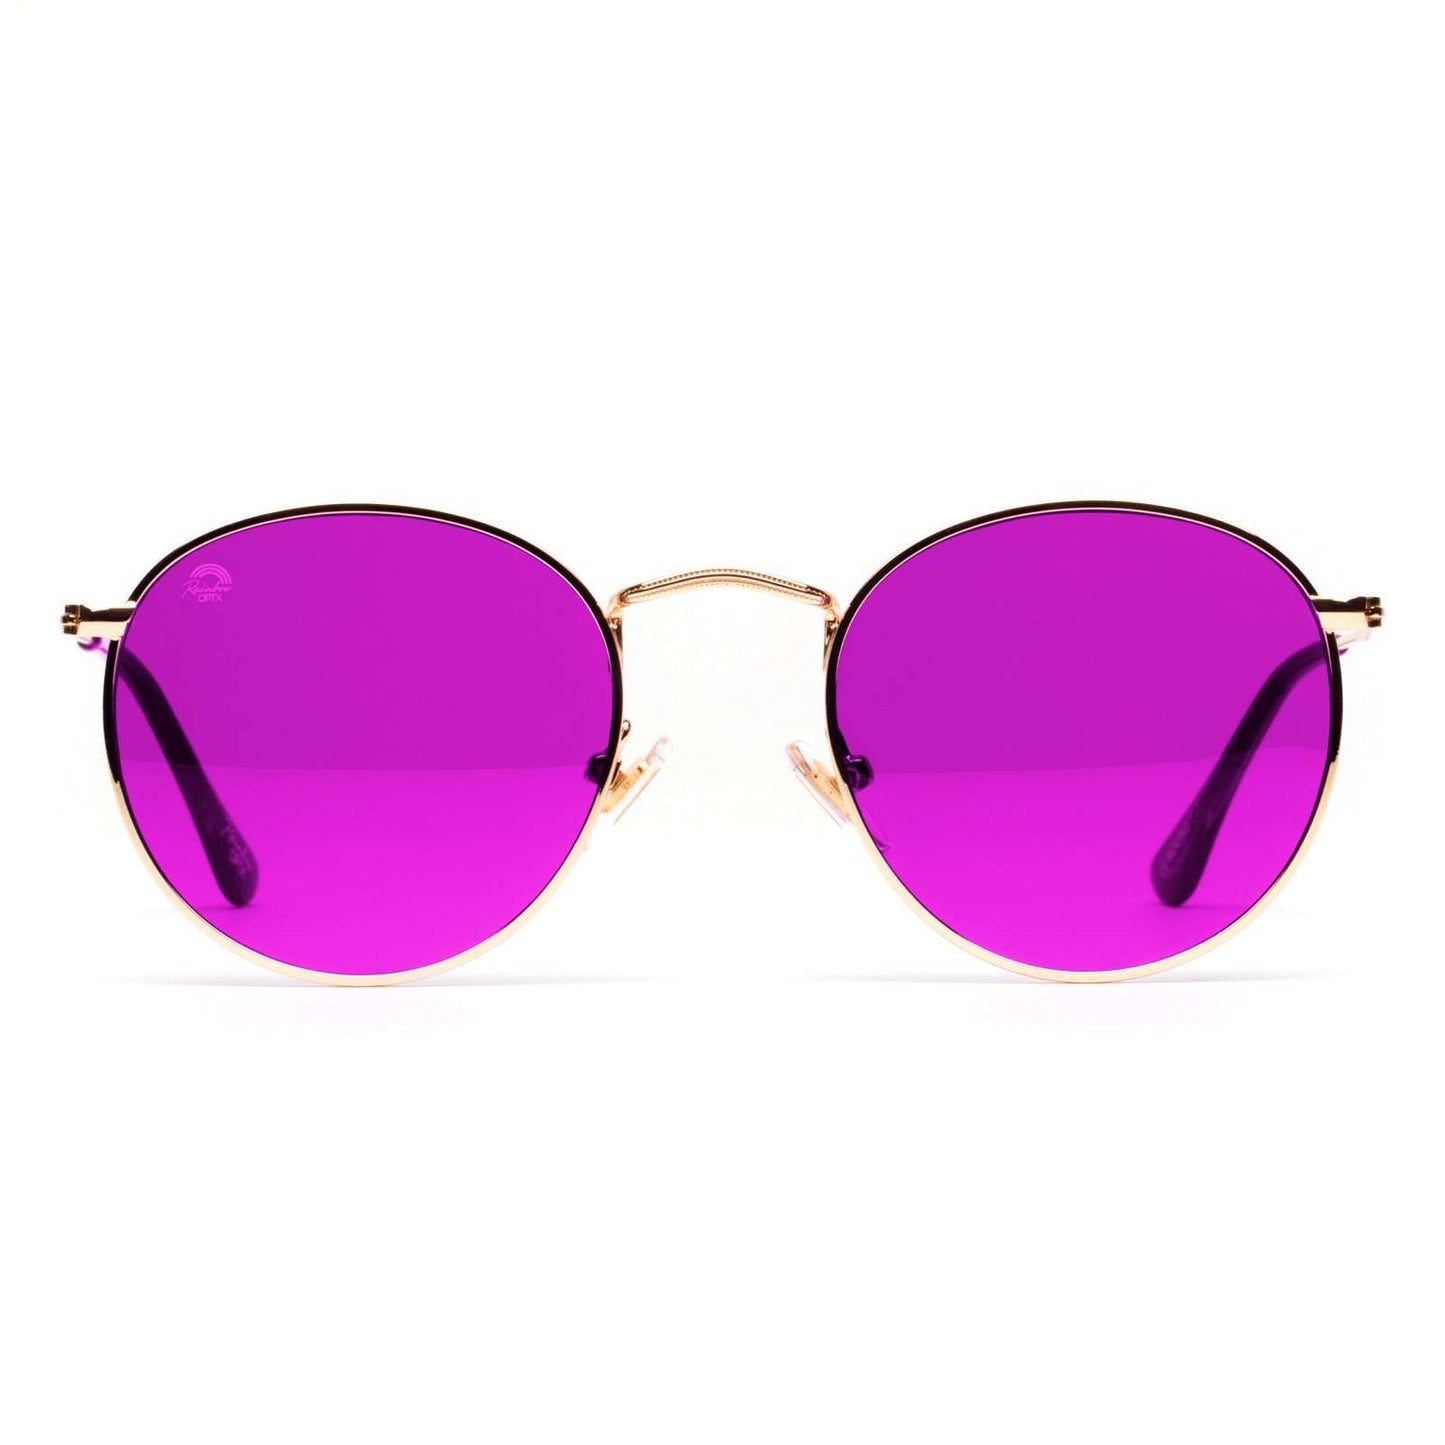 RainbowOPTX Sunglasses Round - Magenta-Accessories-Rainbow Optx-Faire-The Twisted Chandelier